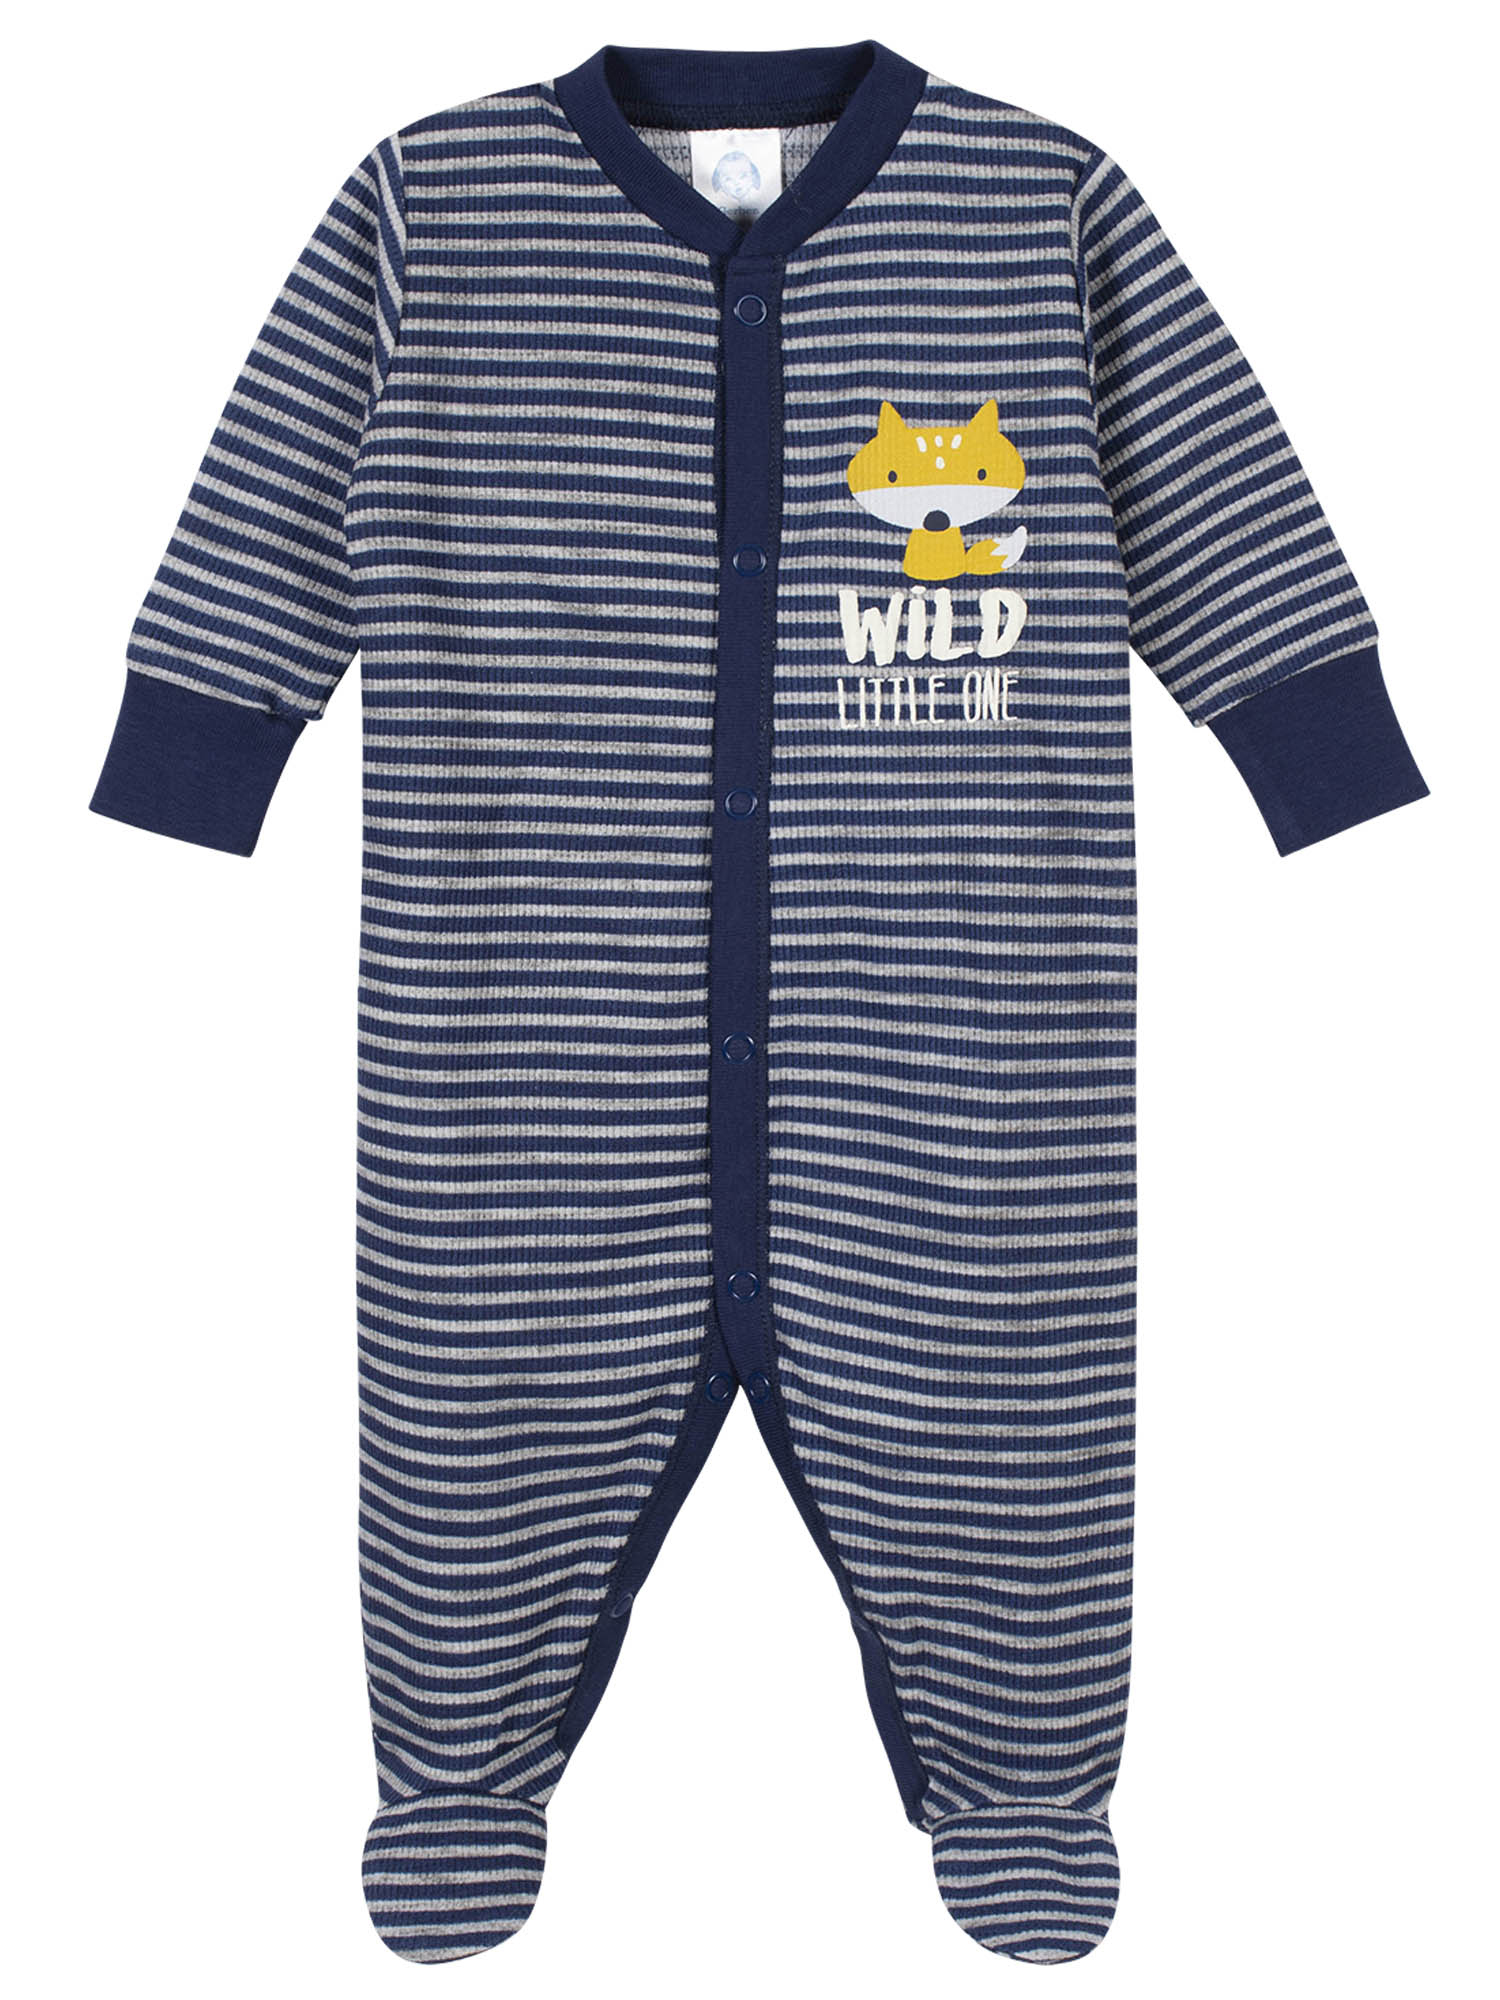 Gerber Baby Boy Thermal Footed Sleep 'N Play Pajamas, 2-Pack - image 2 of 11